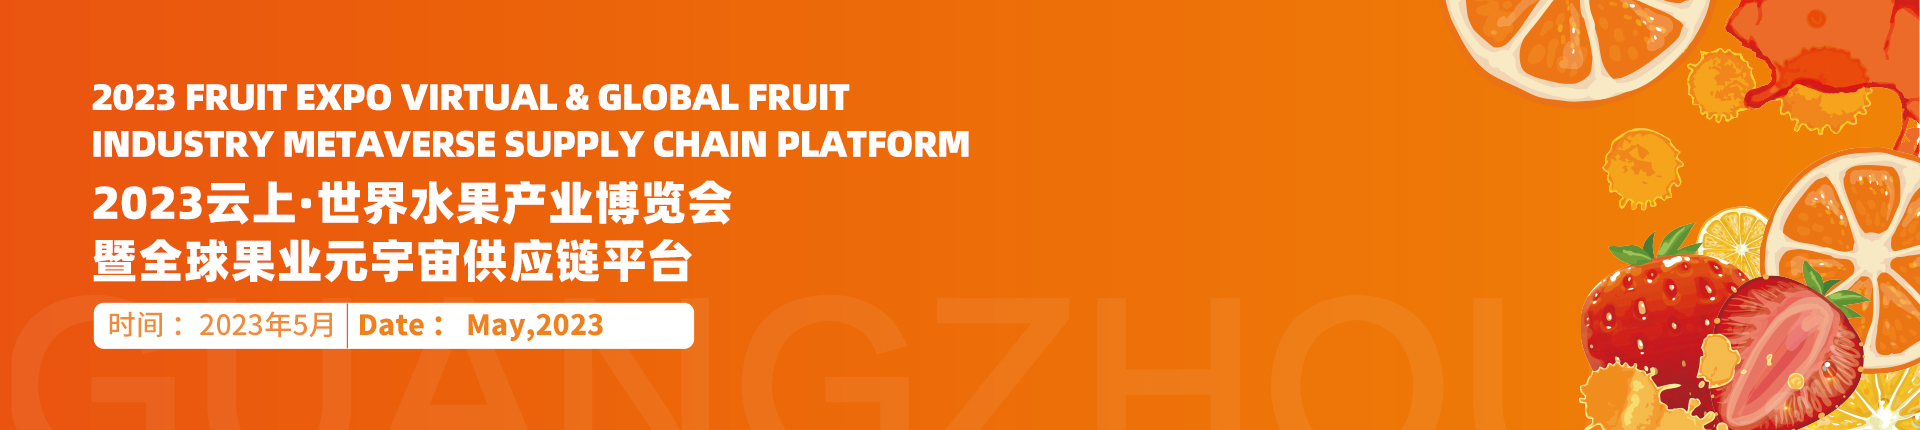 2023云上·世界水果产业博览会暨全球果业元宇宙供应链平台